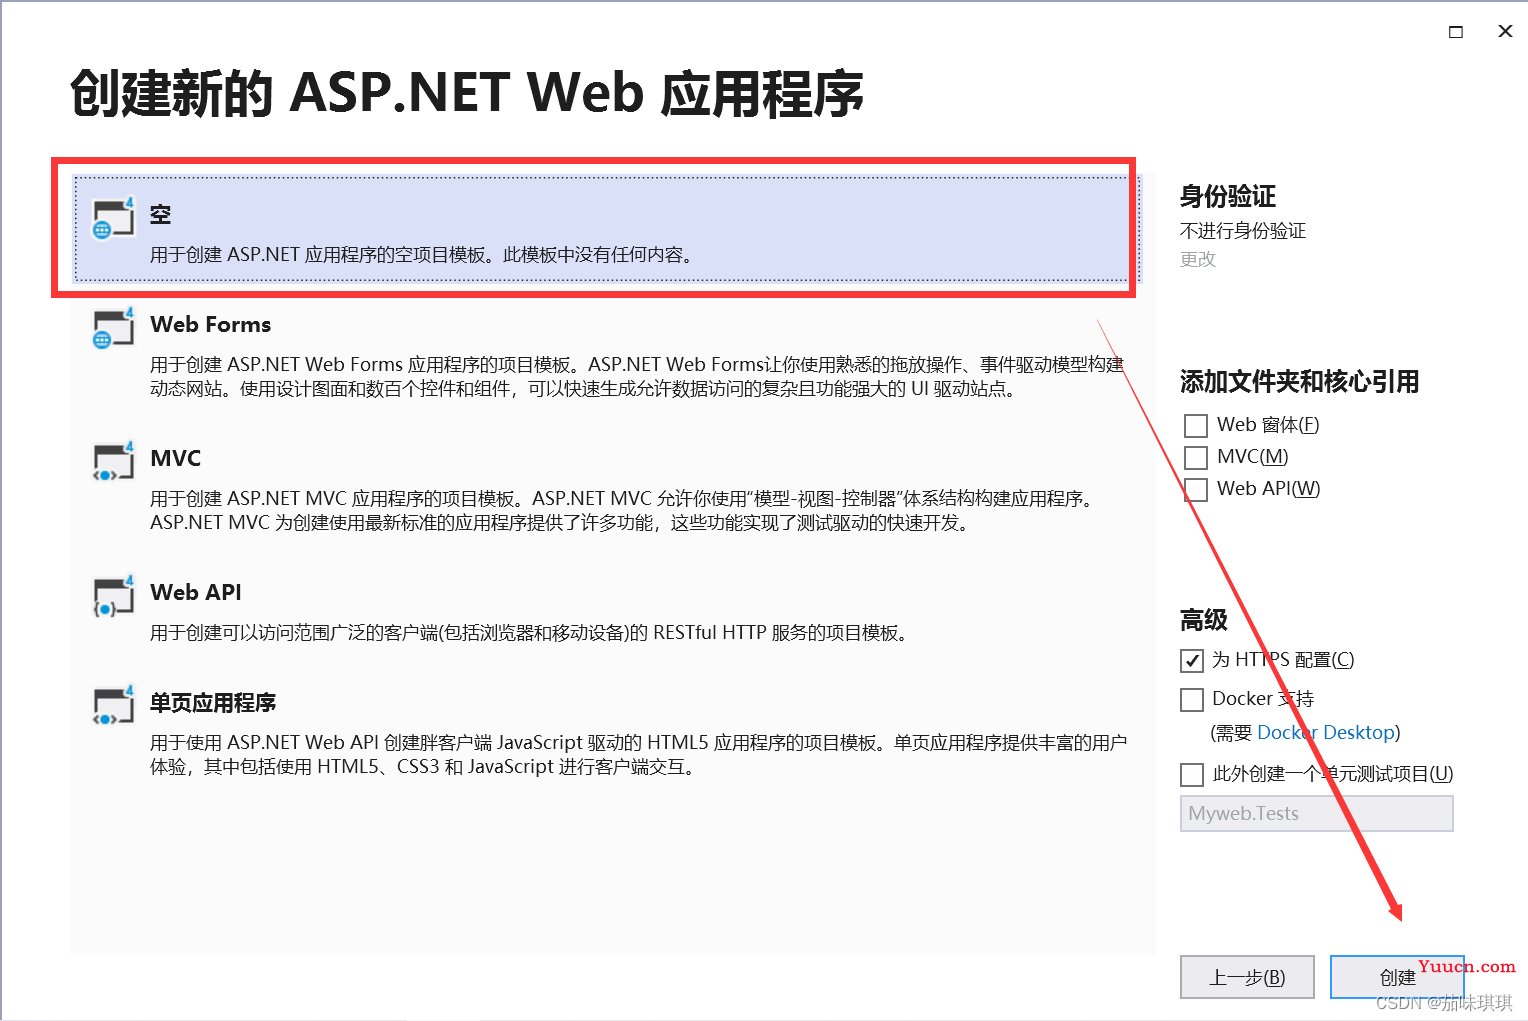 【详细】利用VS2019创建Web项目，并发送到IIS，以及IIS与ASP.NET配置